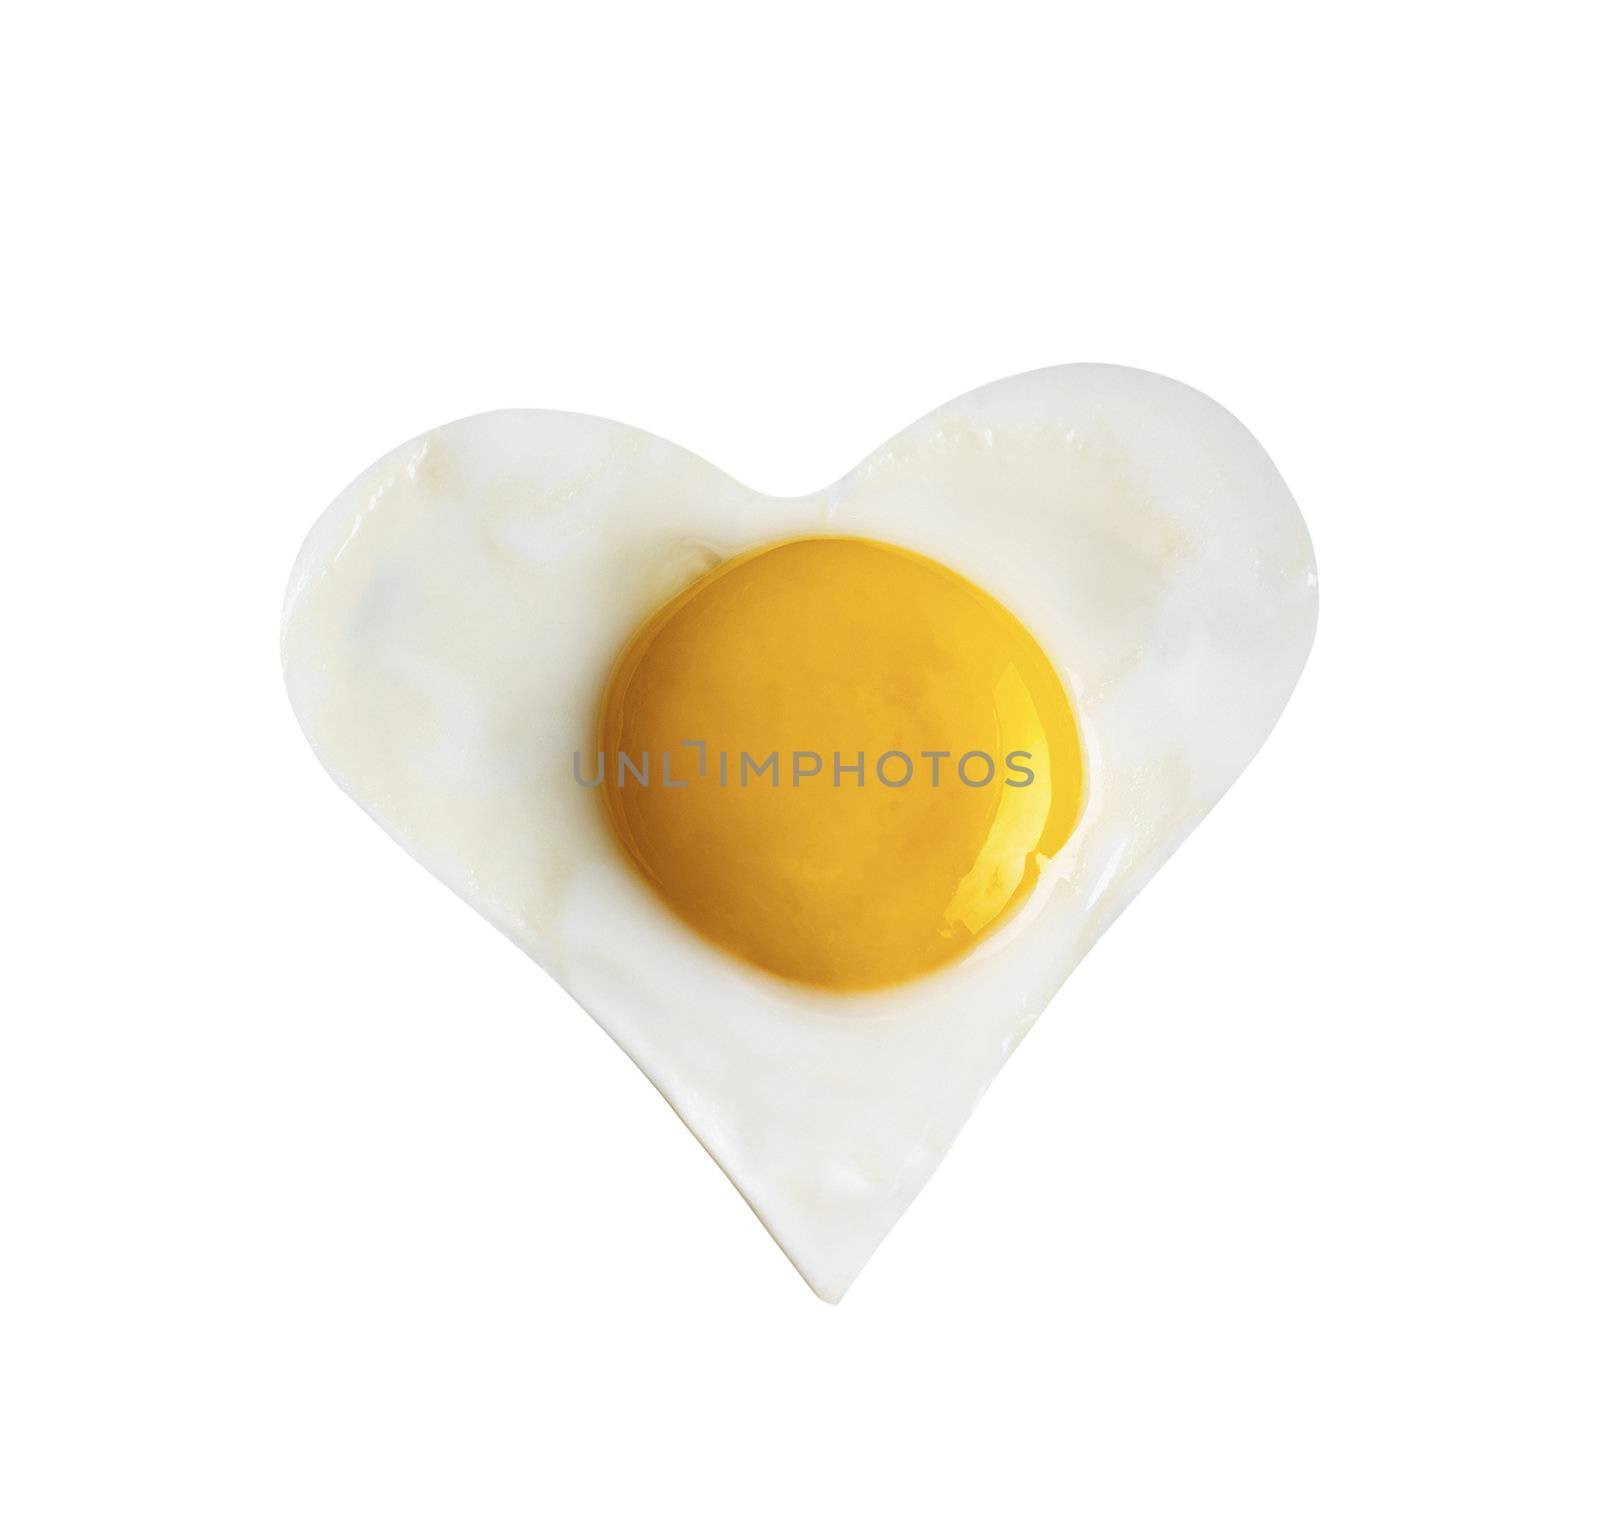 Fried egg like heart